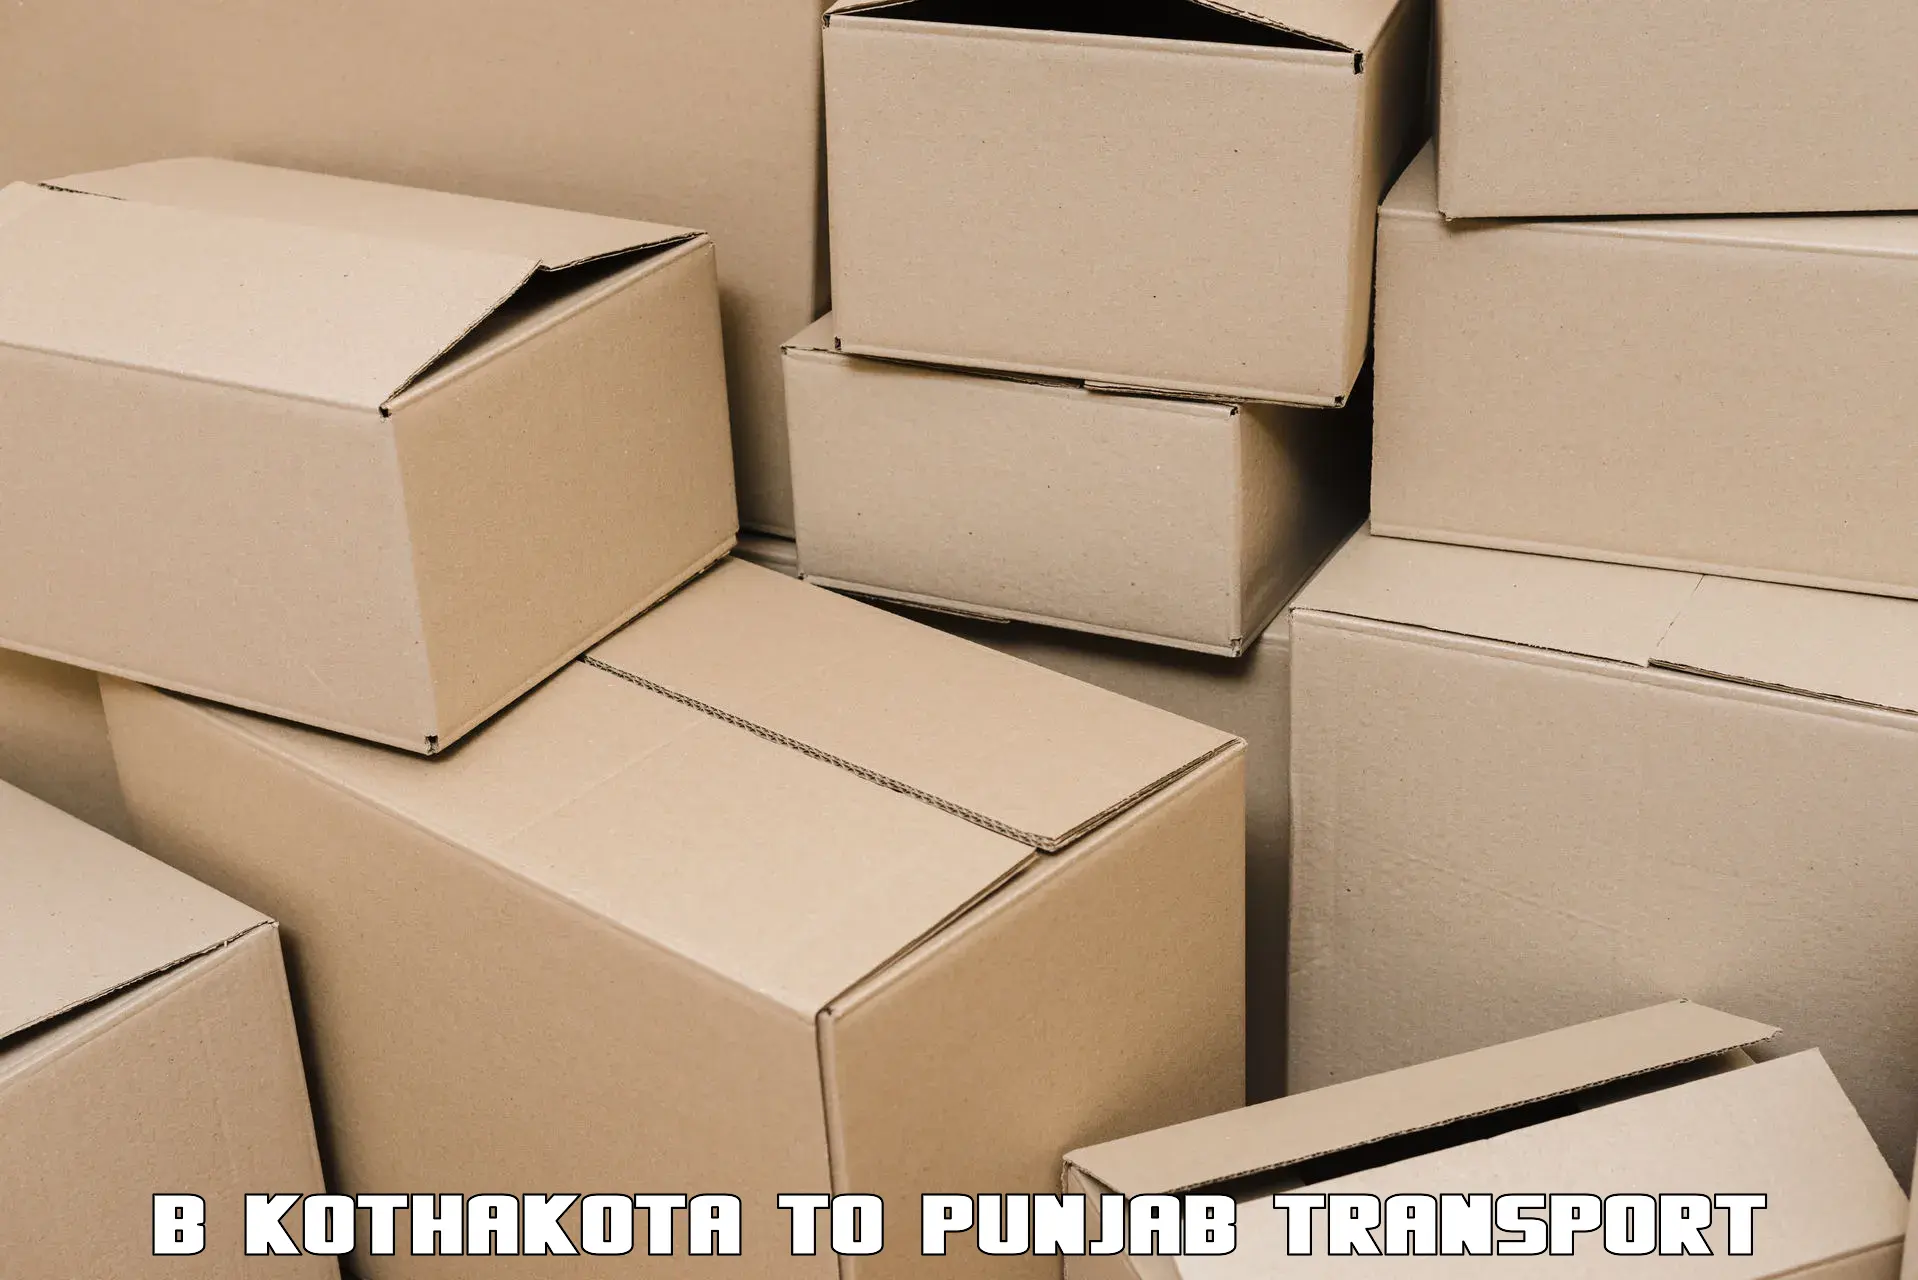 Shipping services B Kothakota to Patti Tarn Tara